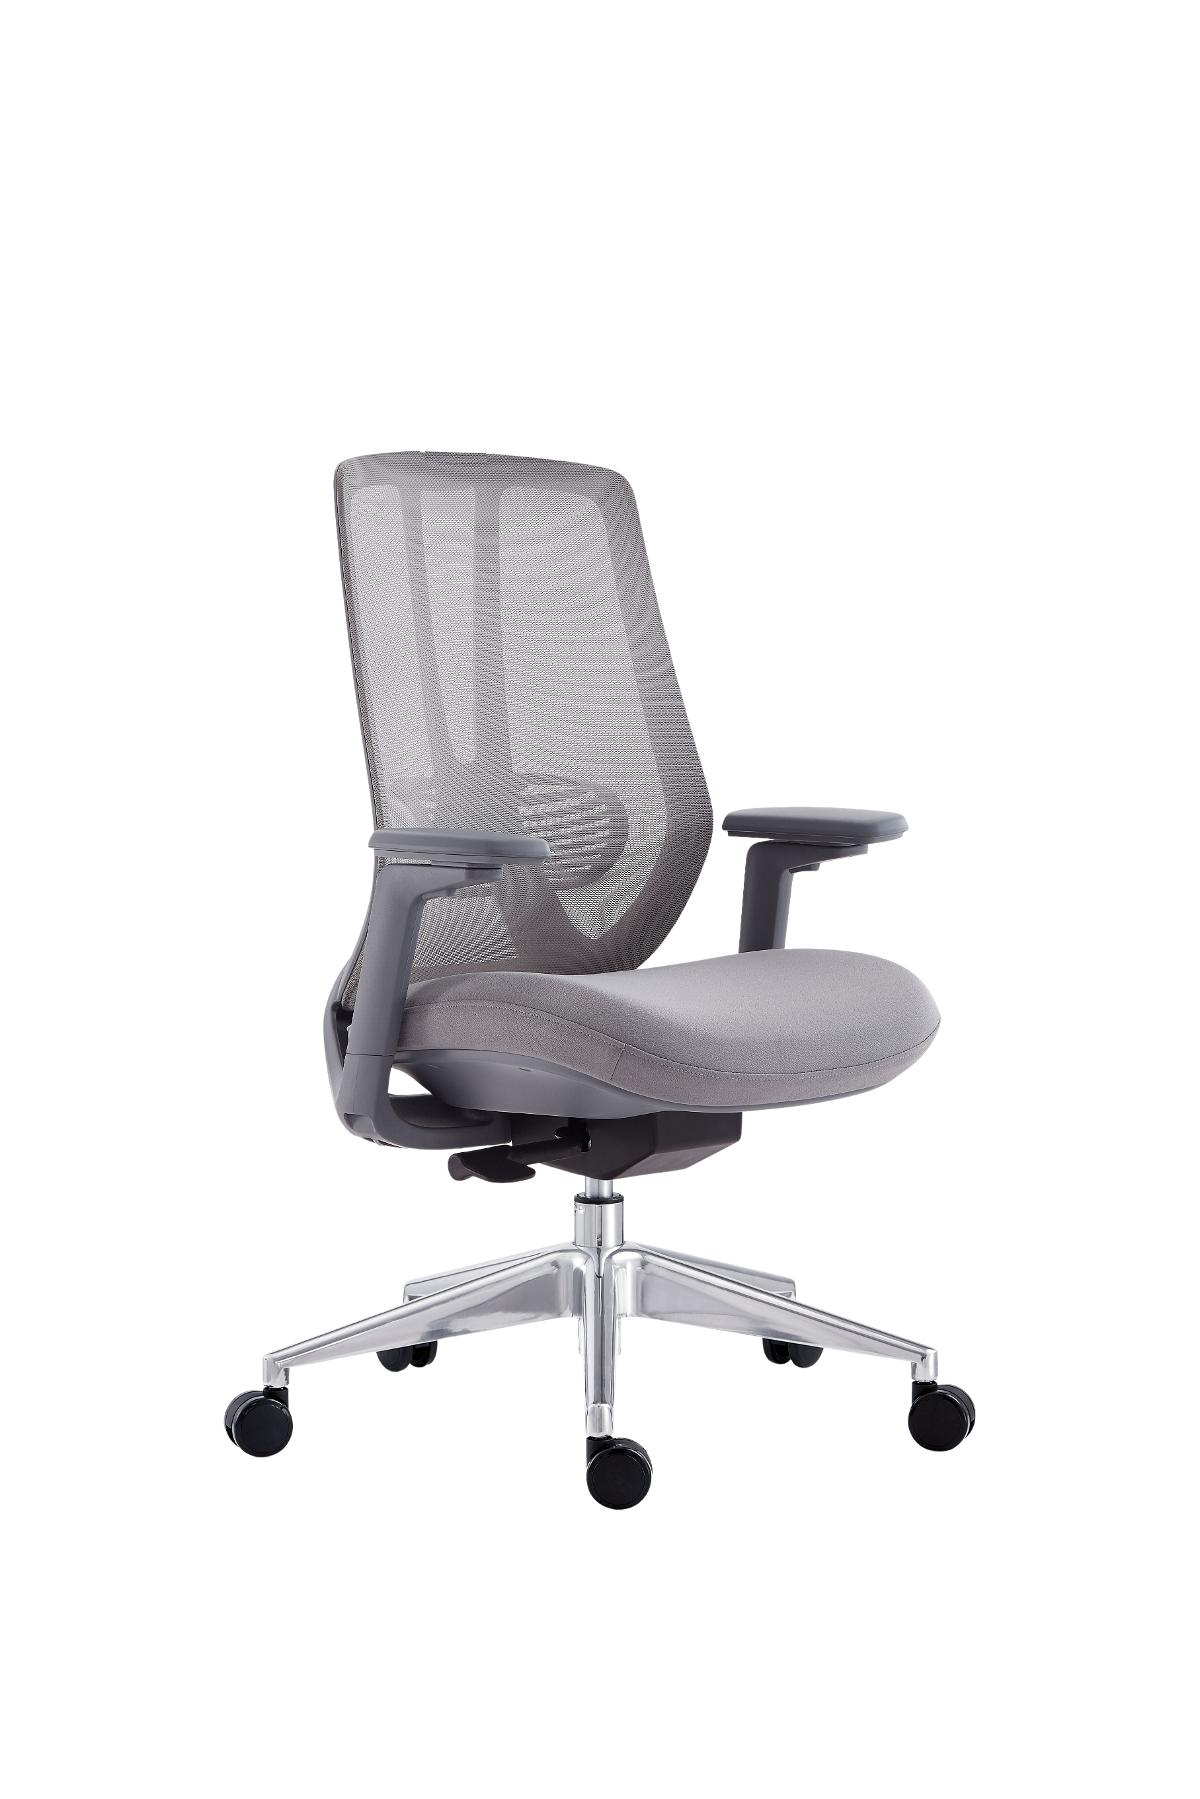 เก้าอี้สำนักงาน รุ่น 7102-5 Grey M